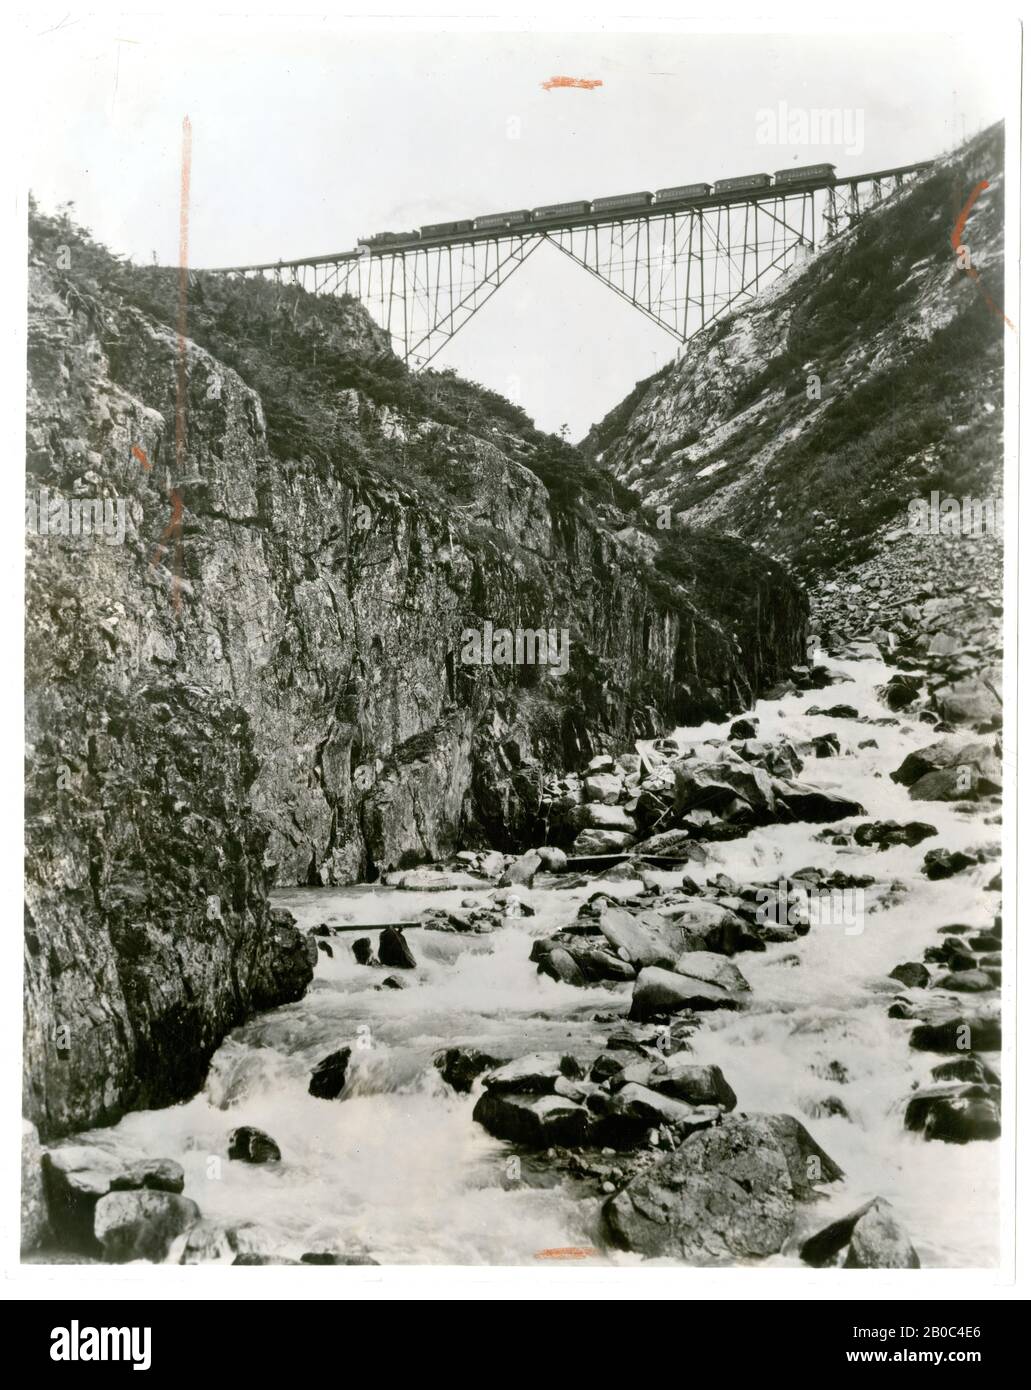 Artiste inconnu (James Clyde Gilbert?), pont Cantilever sur le chemin de fer de Skagway à White Pass, Alaska, 6/27/1930, imprimé argent gélatine, 9 1/2, 7 1/2 po. (24,13 x 19,05 cm) Banque D'Images